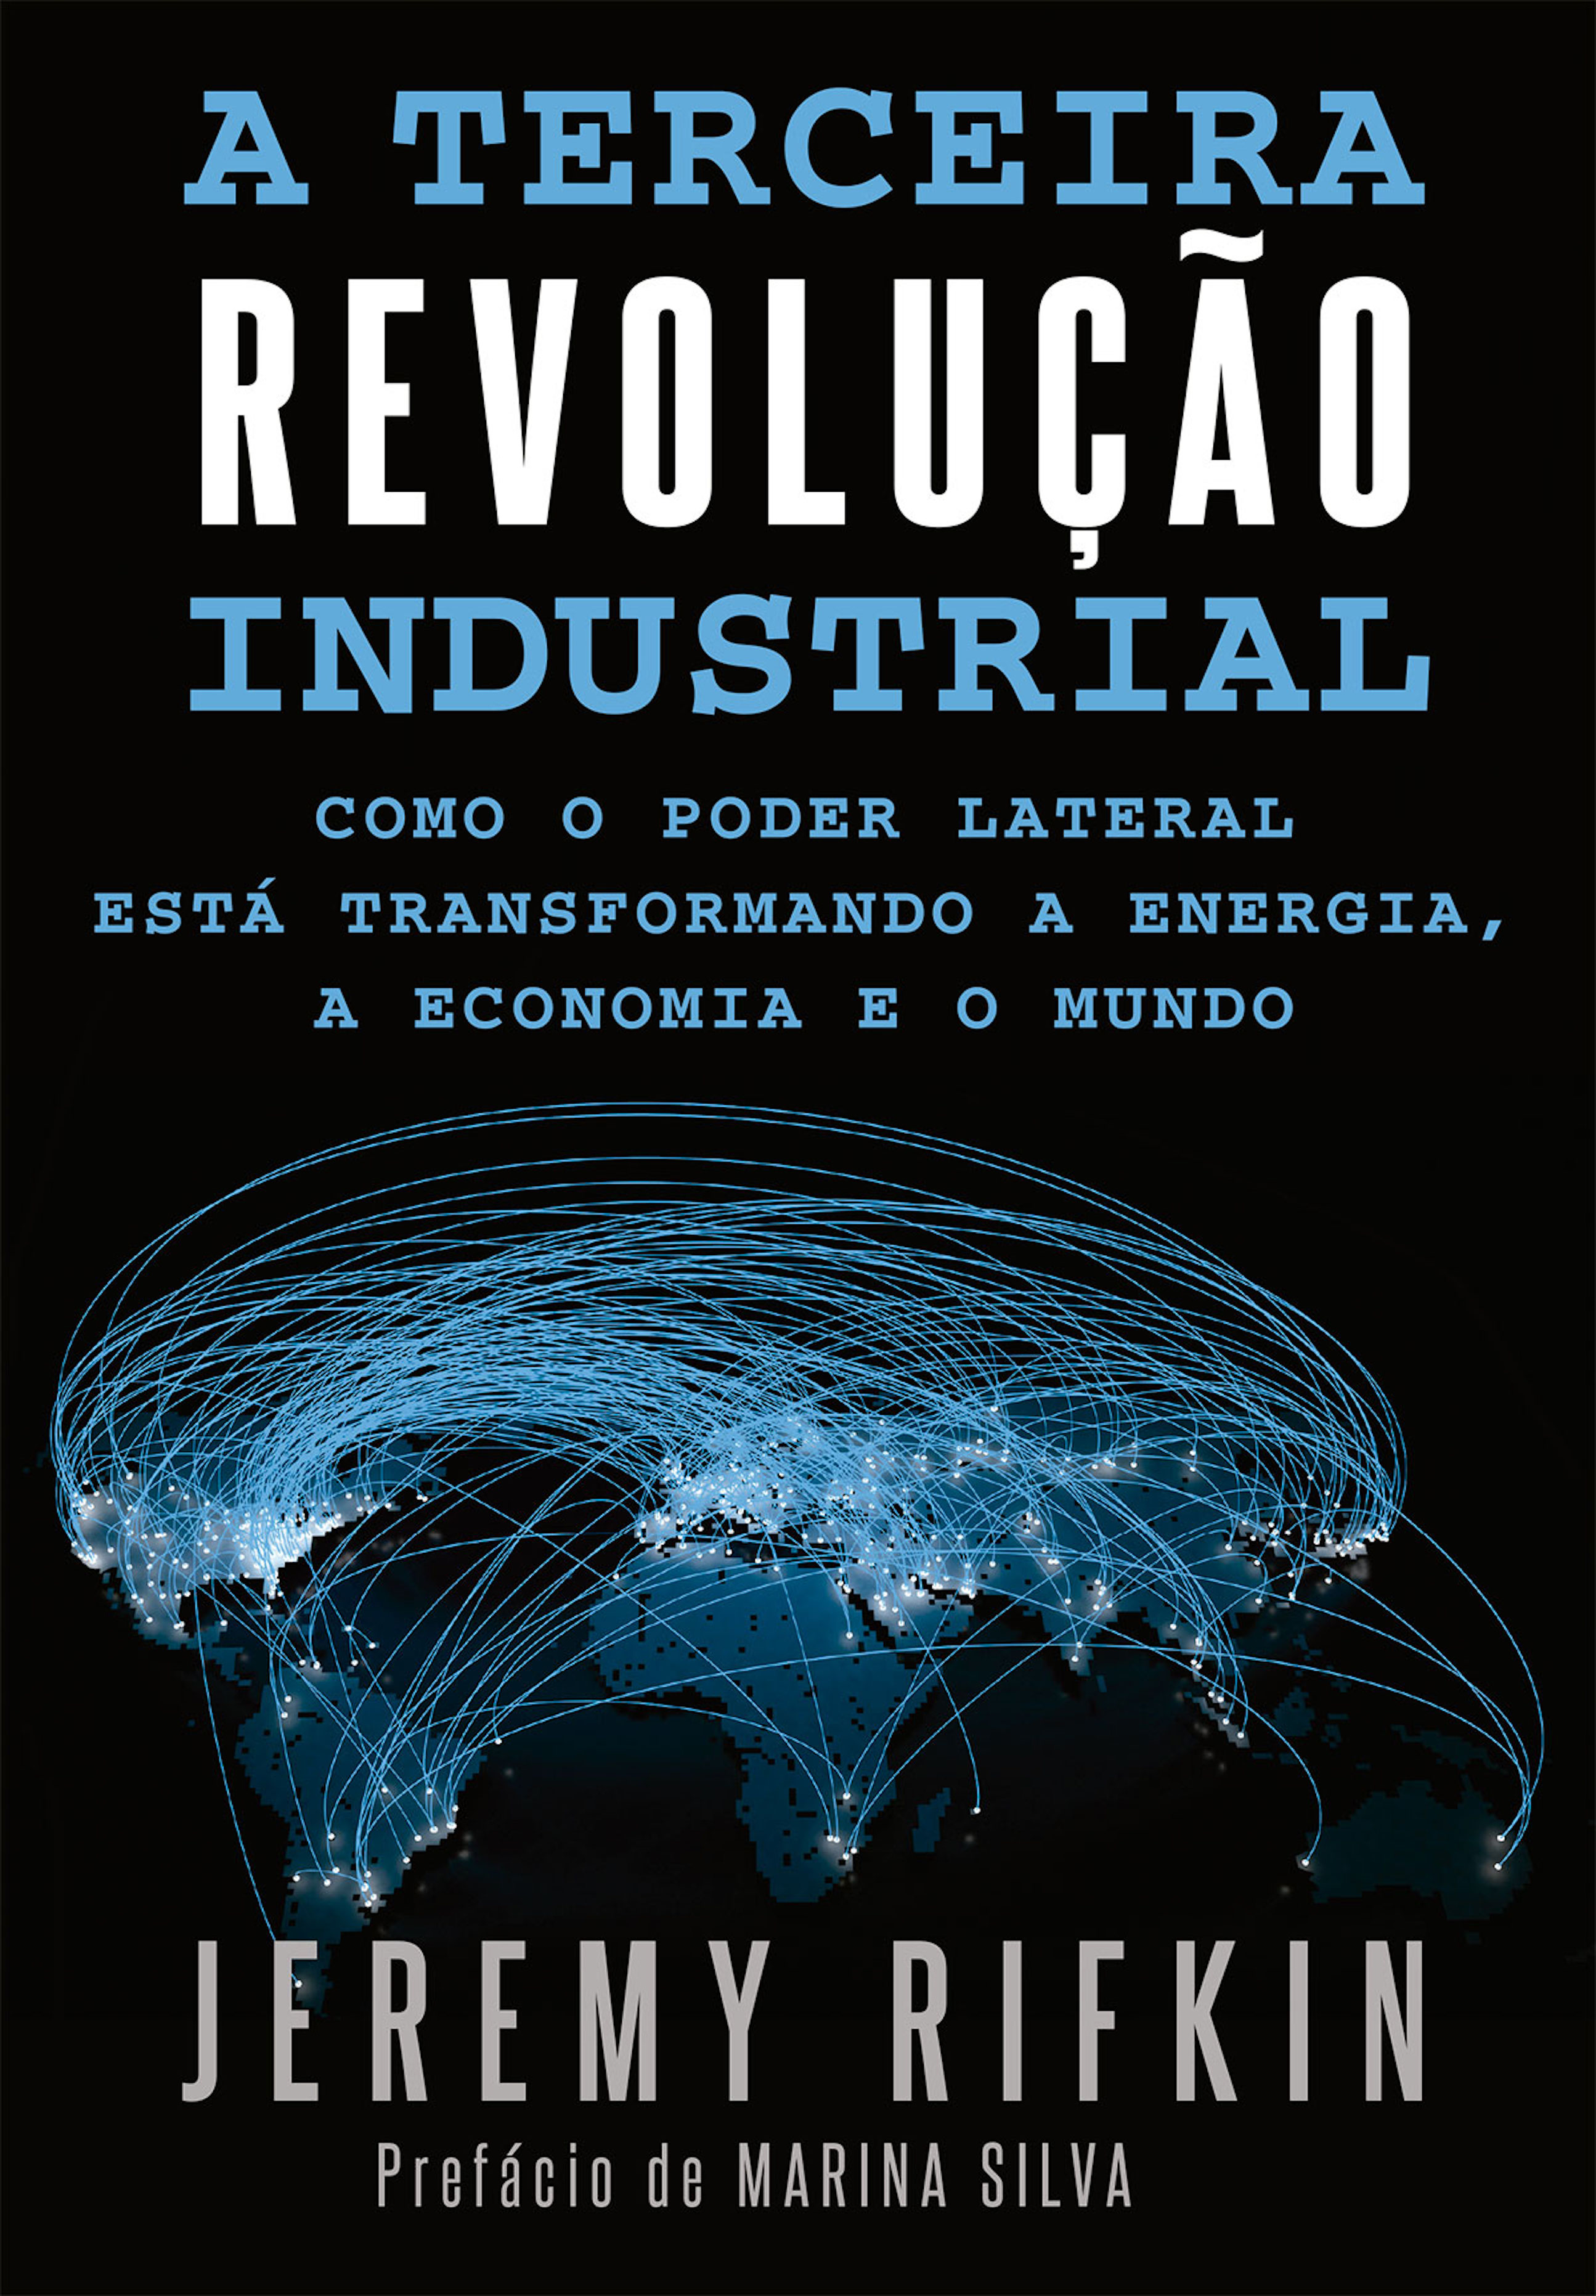 A Terceira Revolução Industrial